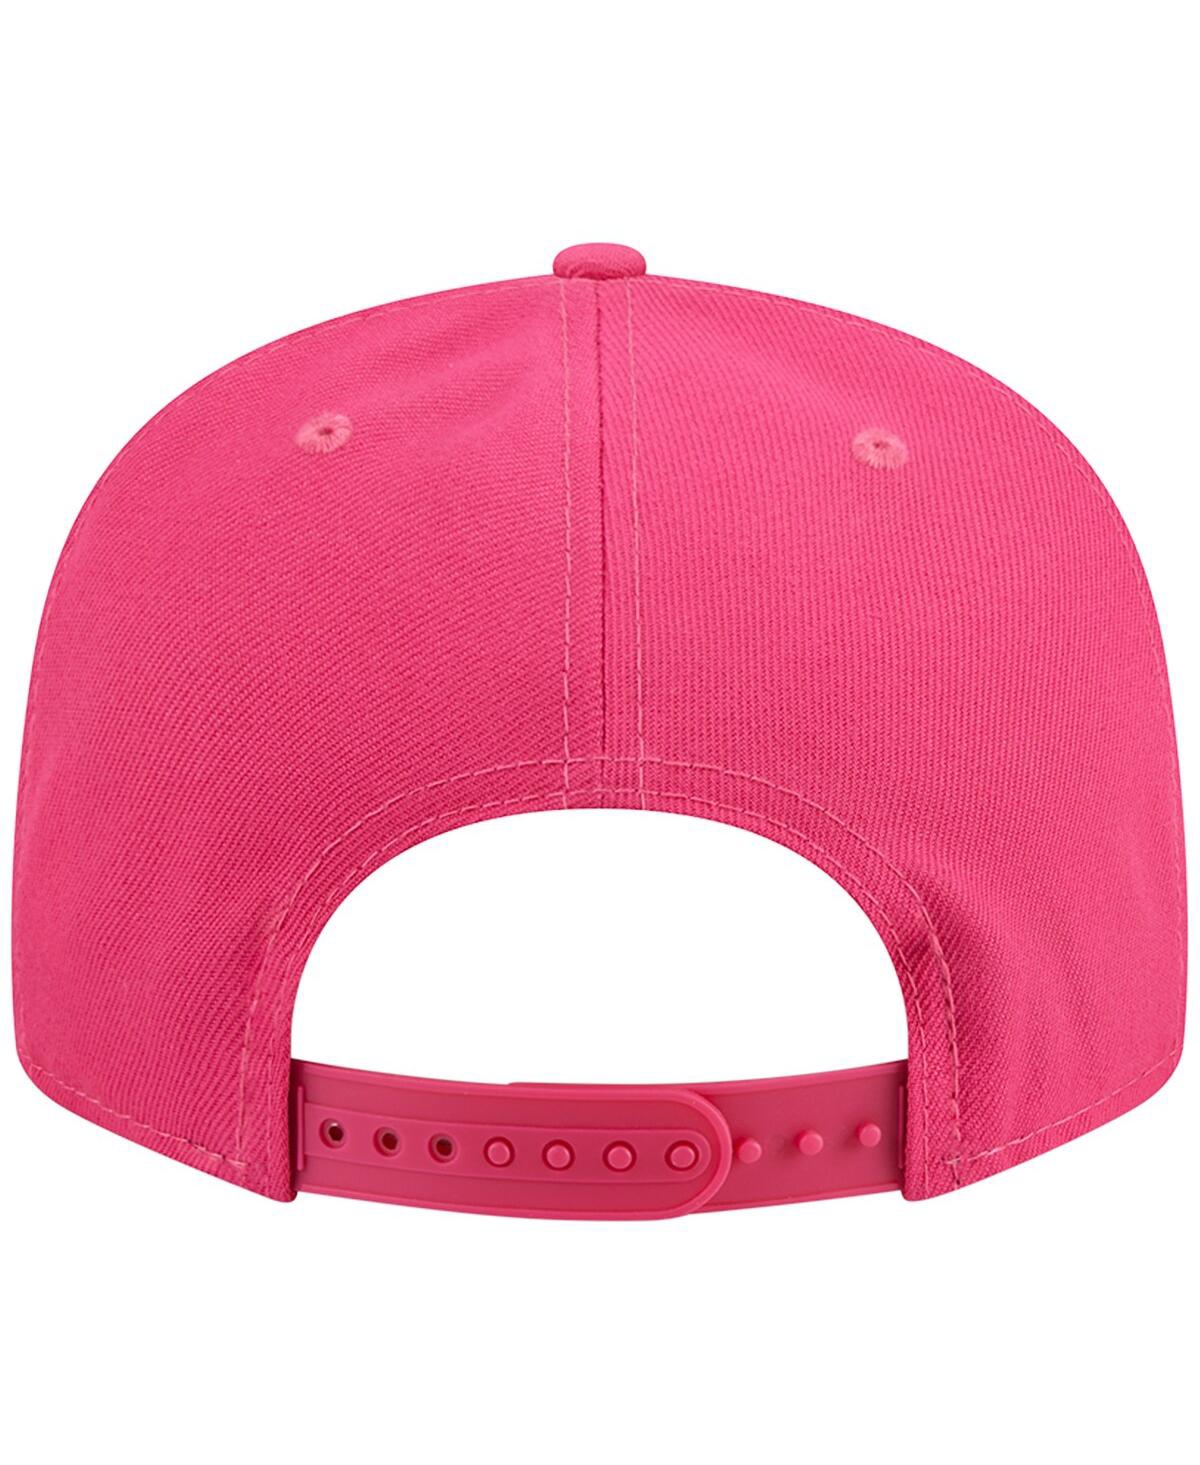 New Era Men's Pink Cincinnati Bengals Color Pack 9fifty Snapback Hat